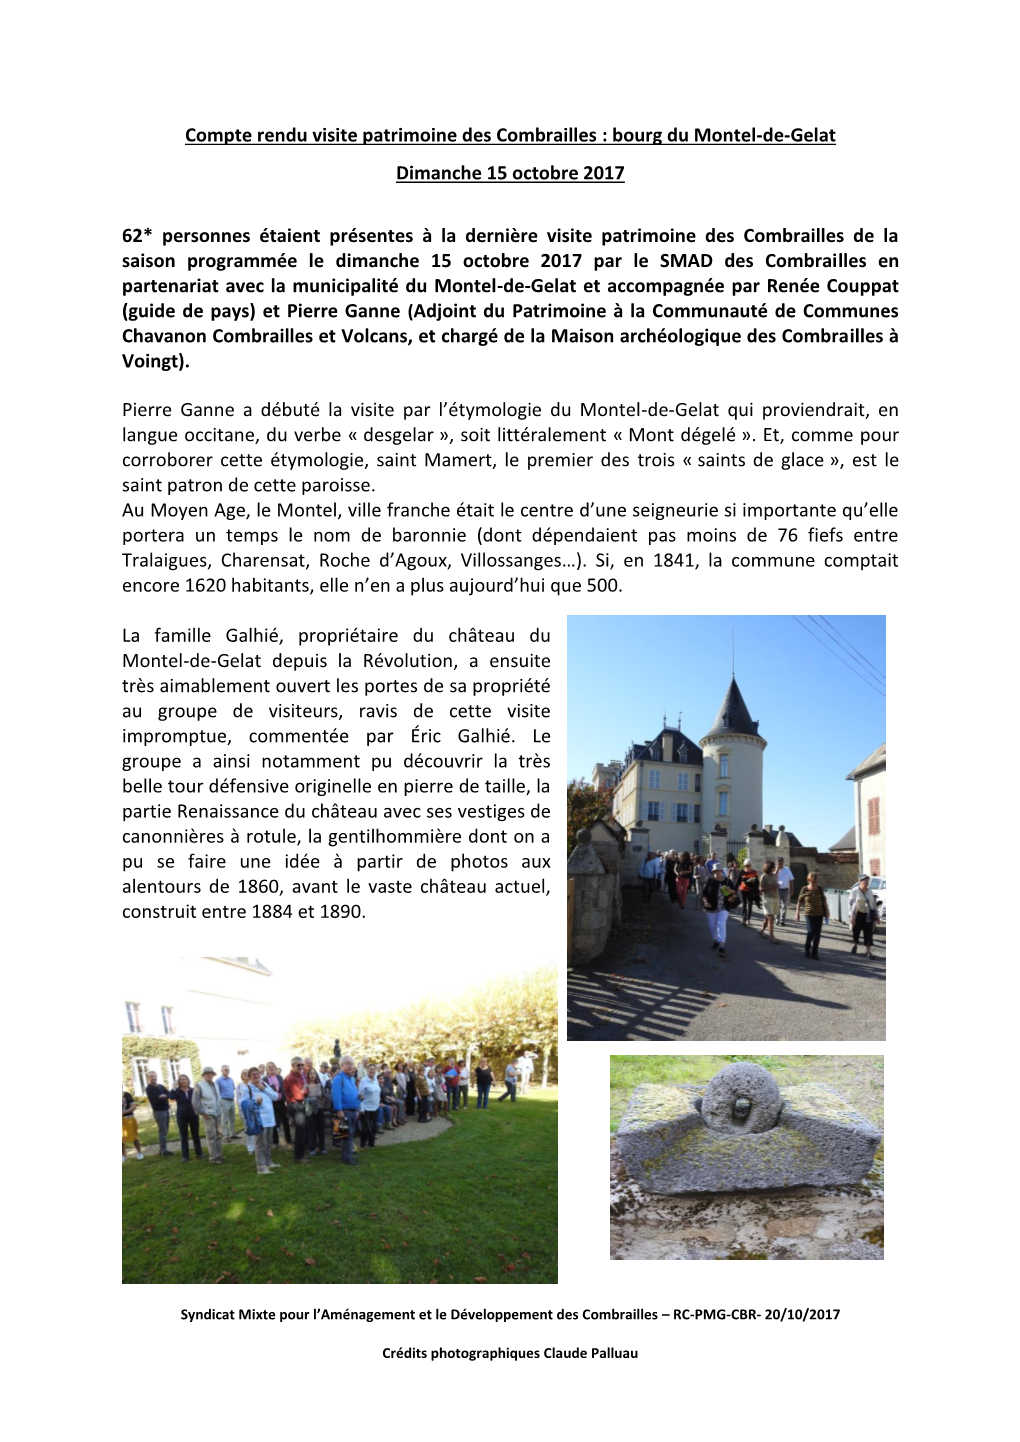 Compte Rendu Visite Patrimoine Des Combrailles : Bourg Du Montel-De-Gelat Dimanche 15 Octobre 2017